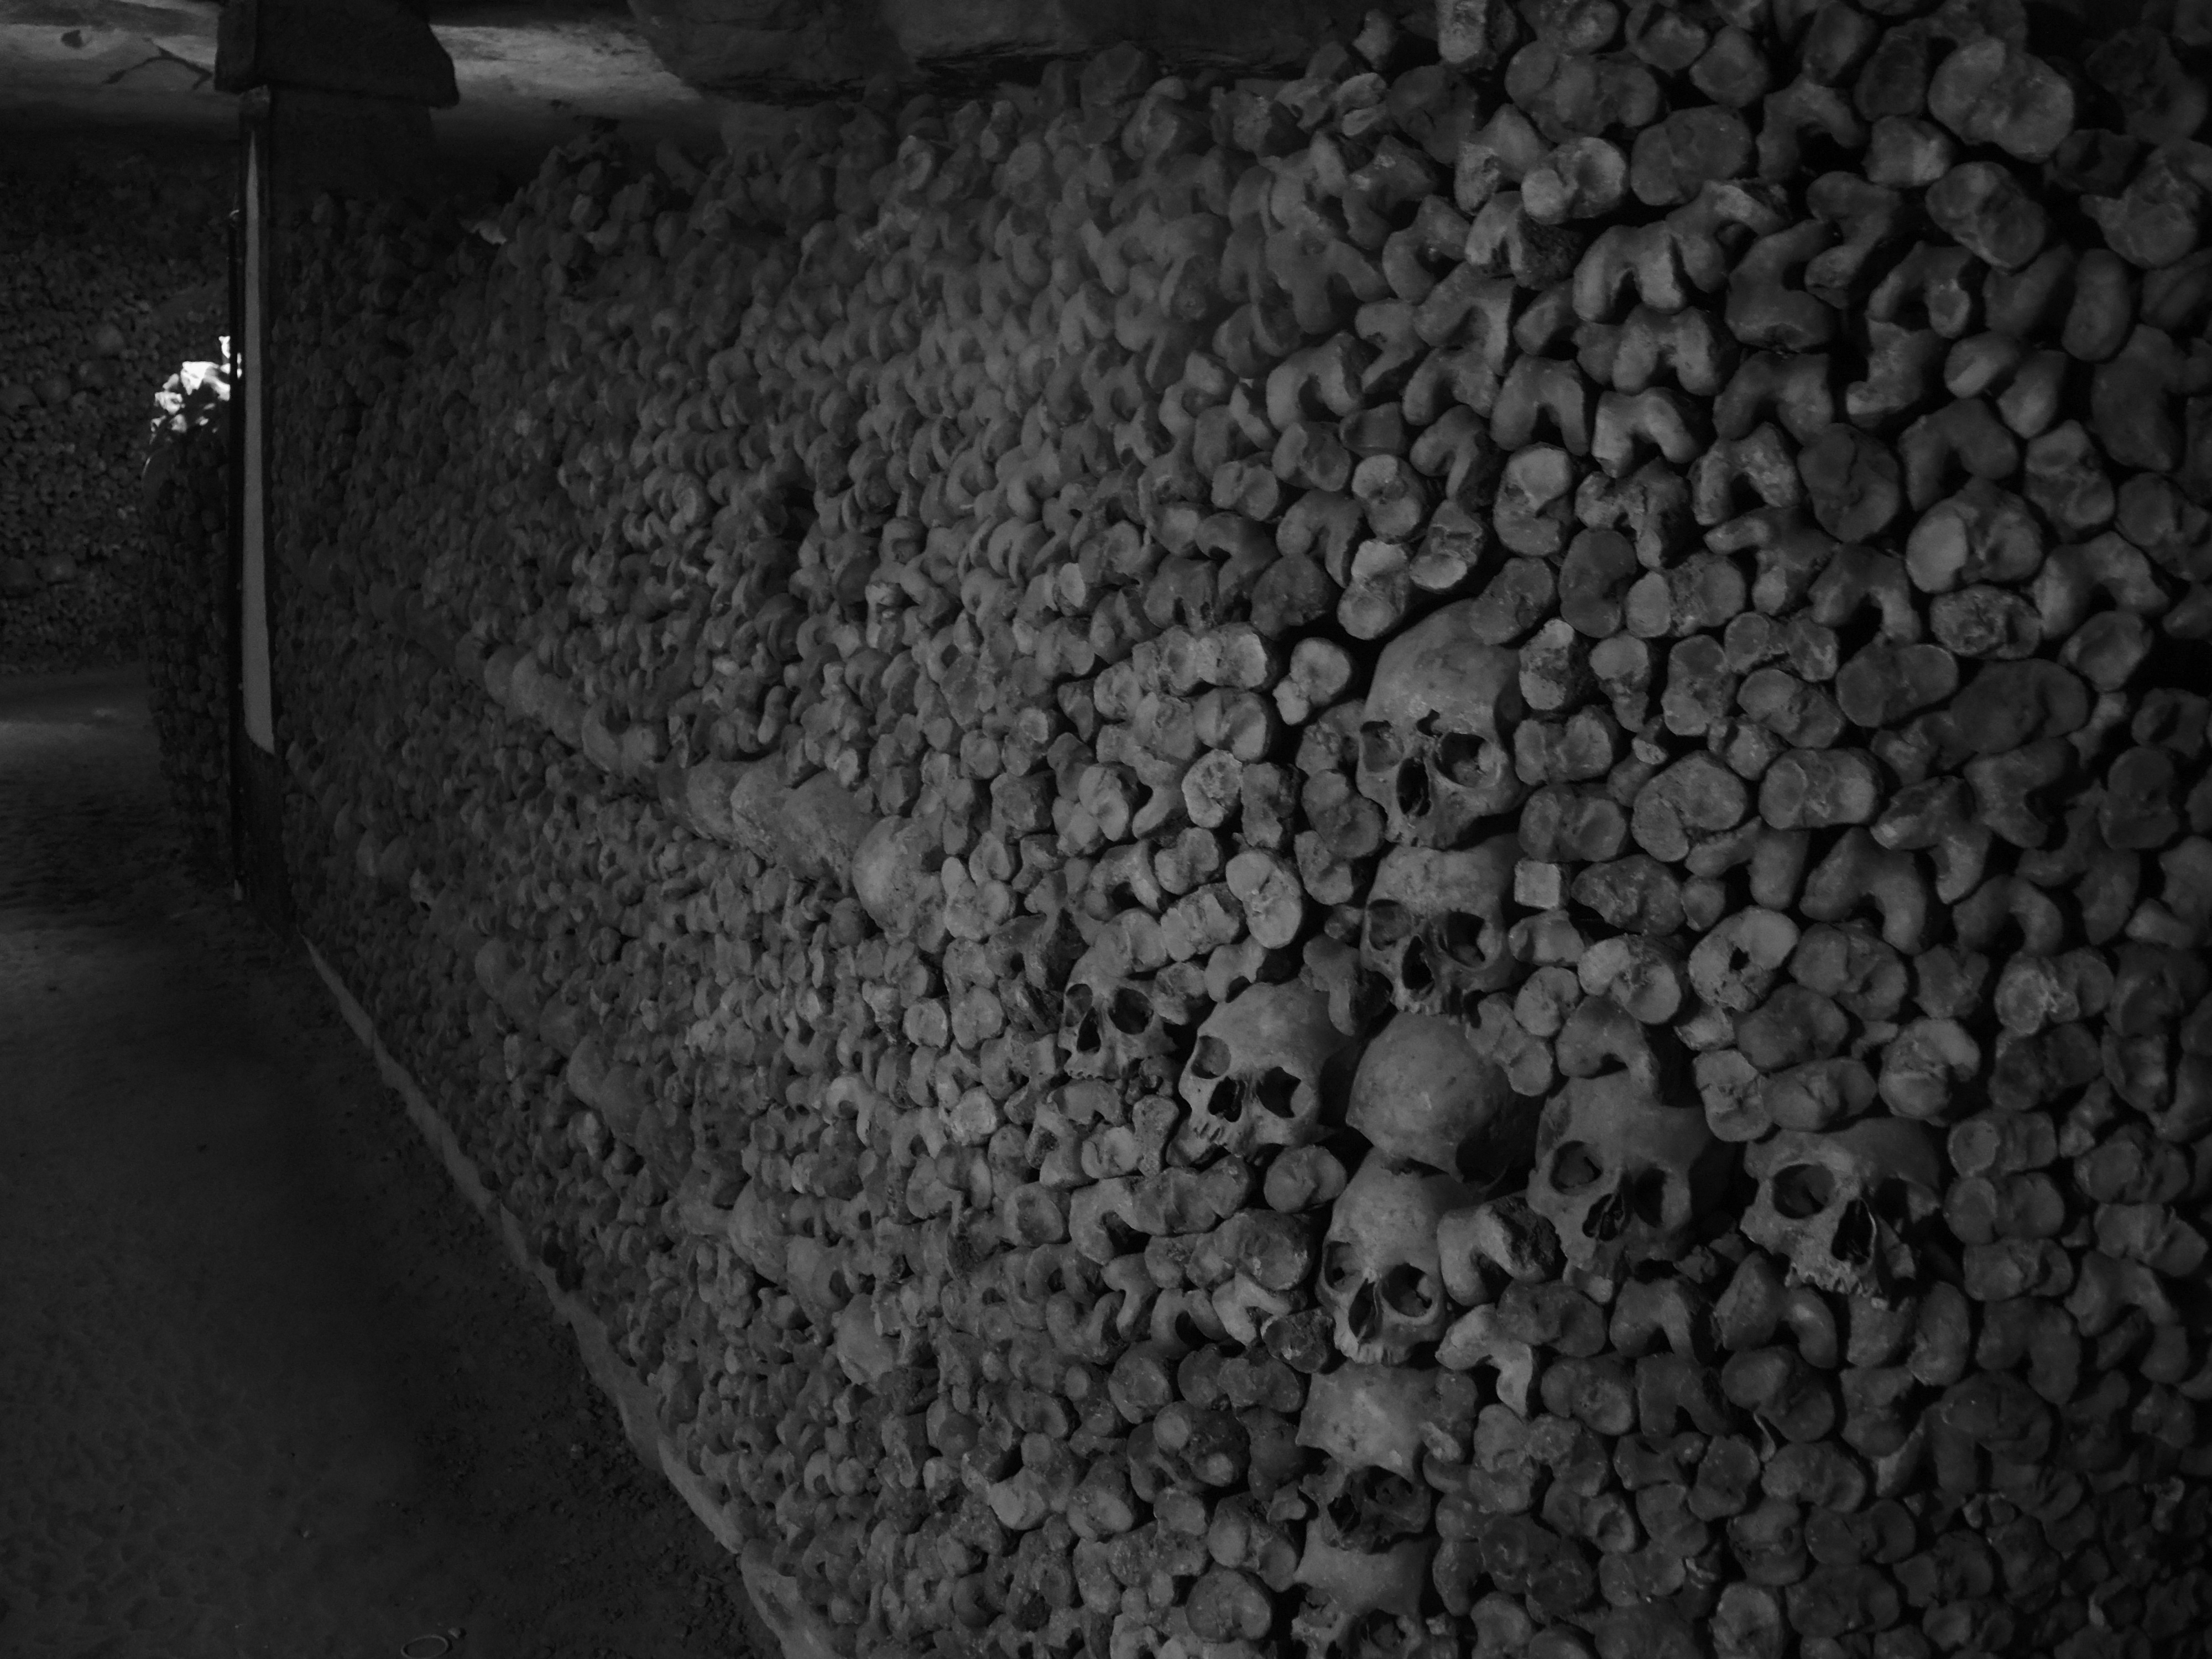 Catacombs bones